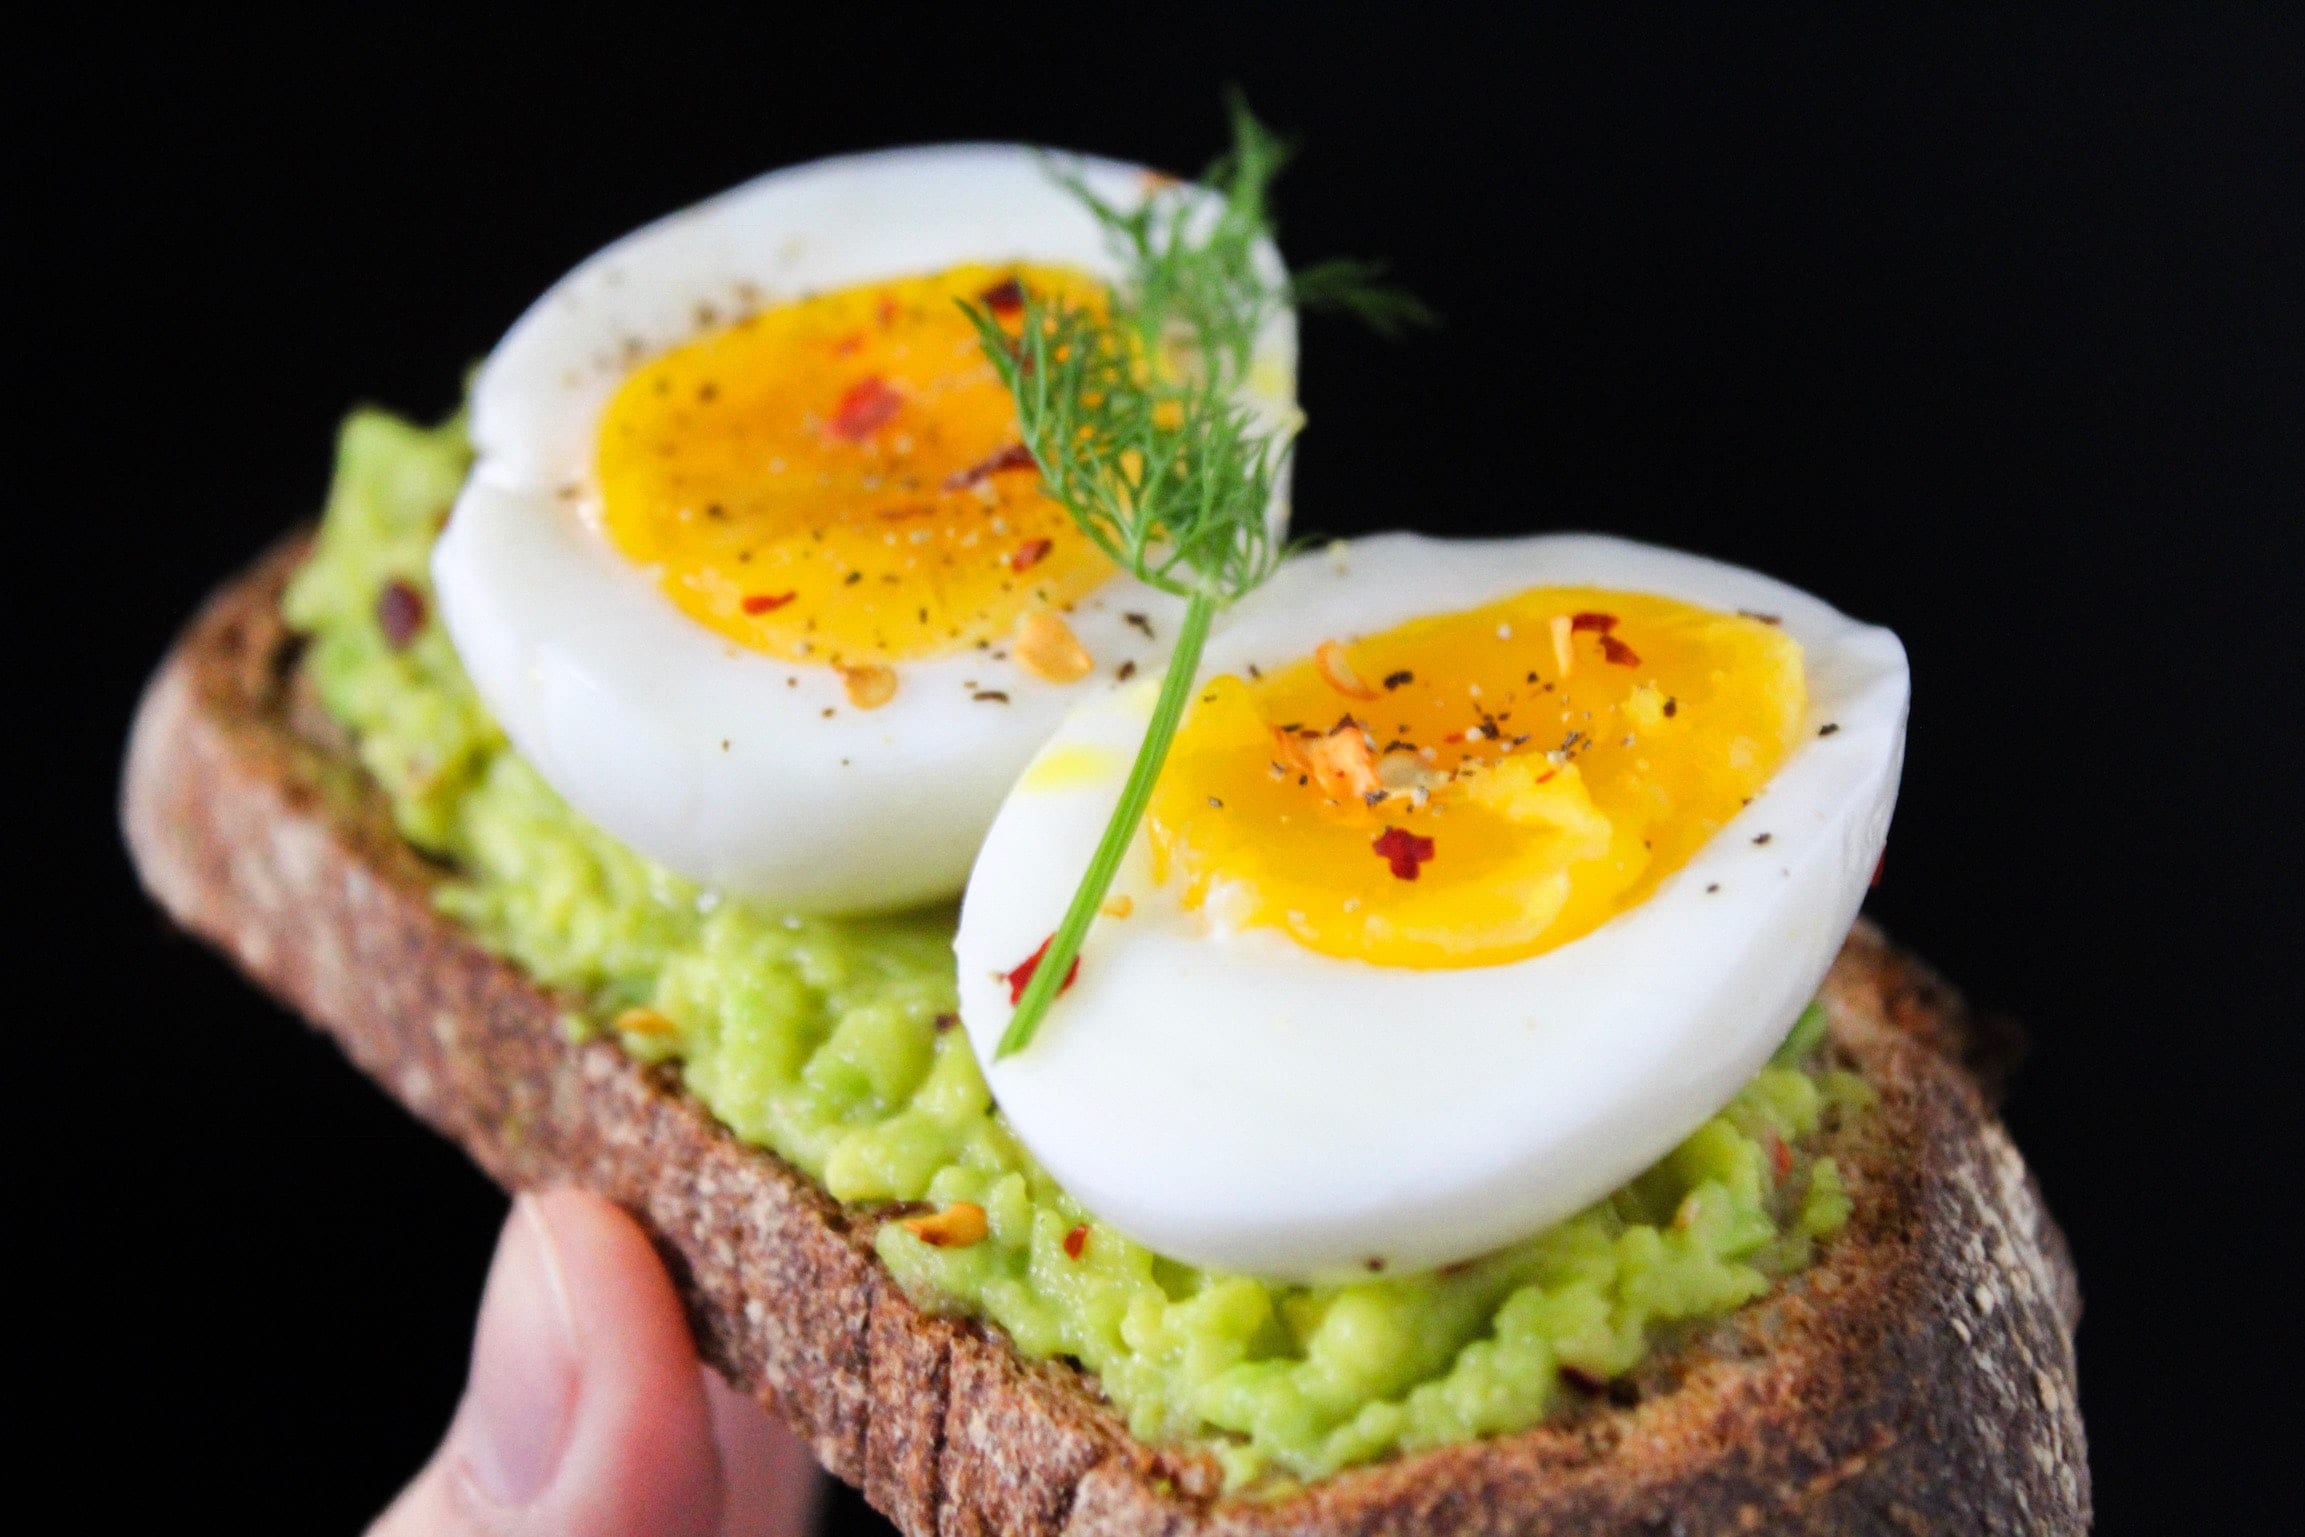  دراسة تكشف تأثير تناول نصف بيضة فقط يومياً على صحتك